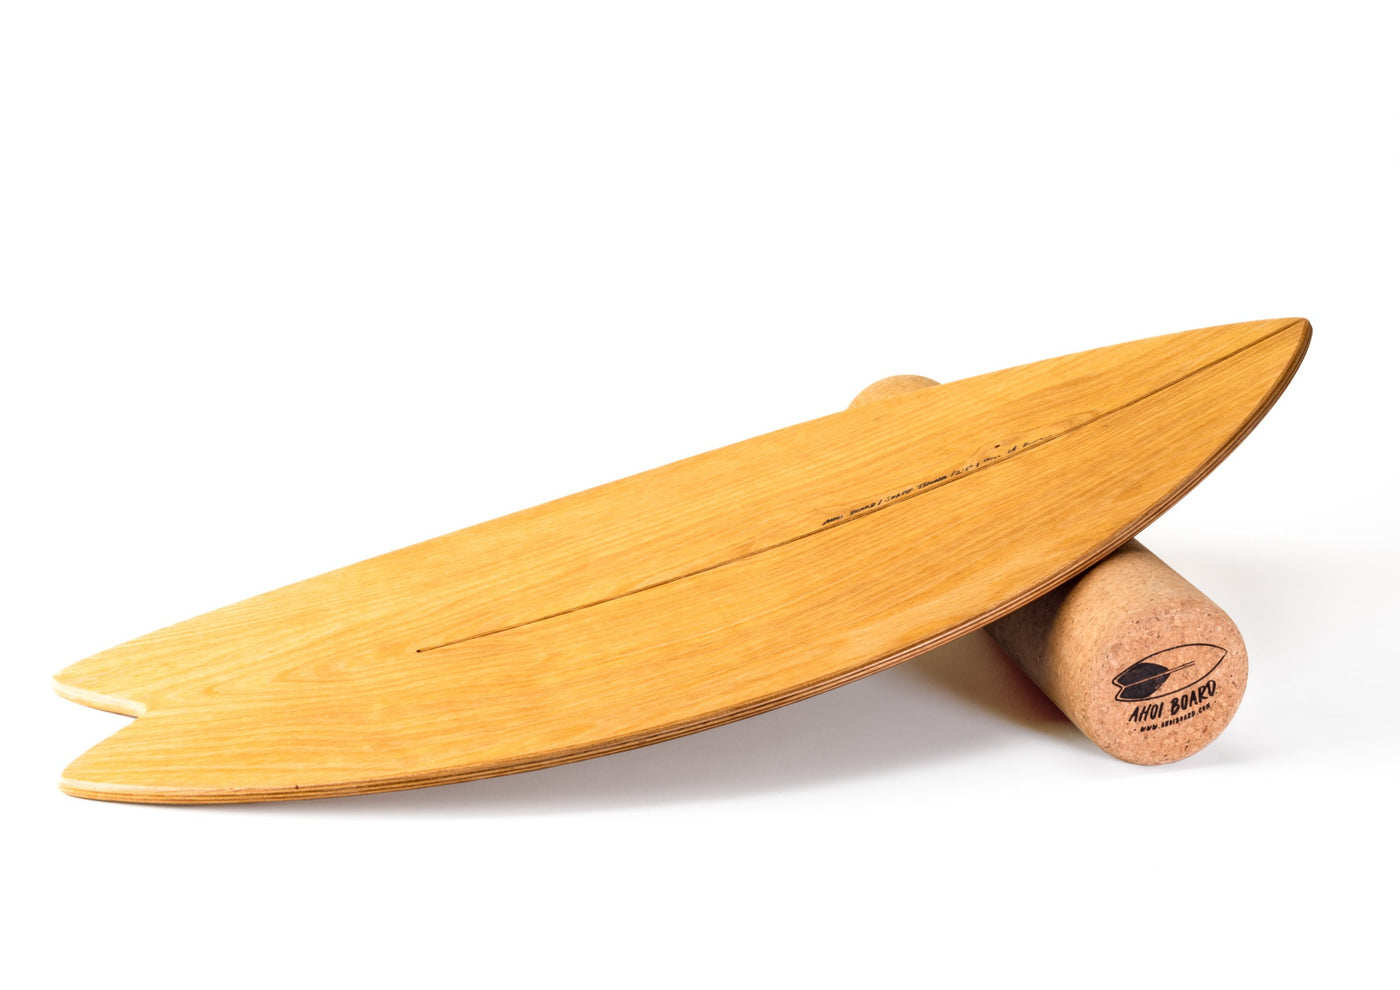 gebogenes Balance Board aus Holz mit natürlicher Holzmaserung auf Korkrolle liegend, Sportartikel für Gleichgewichtsübungen